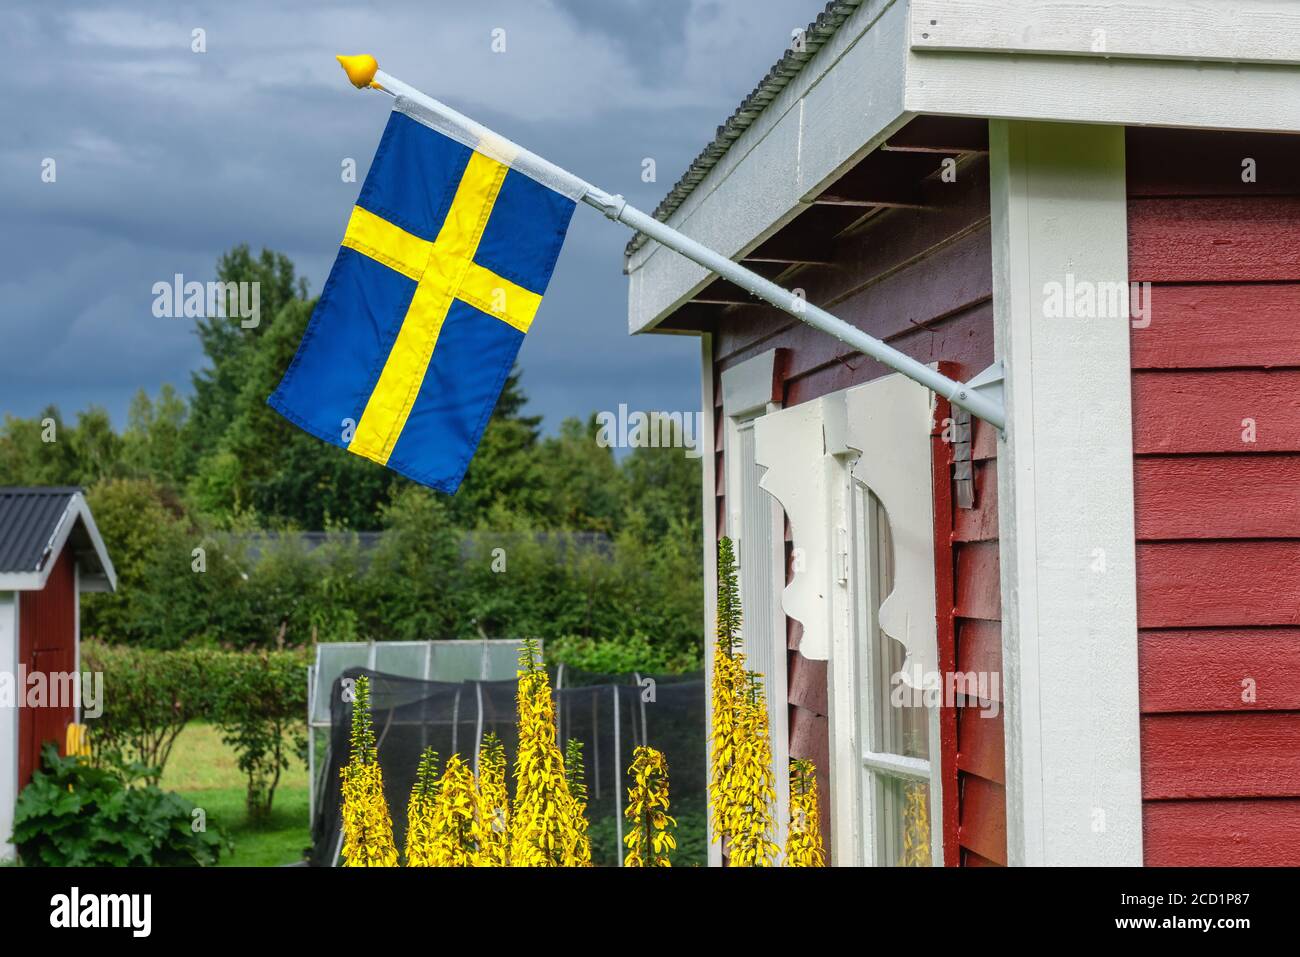 Schwedische Flagge auf traditioneller schwedischer kleiner roter Holzhütte, weißes Fenster, Tür. Sommertag nach Regen, gelbe Blumen, grüne Bäume und Greenho Stockfoto